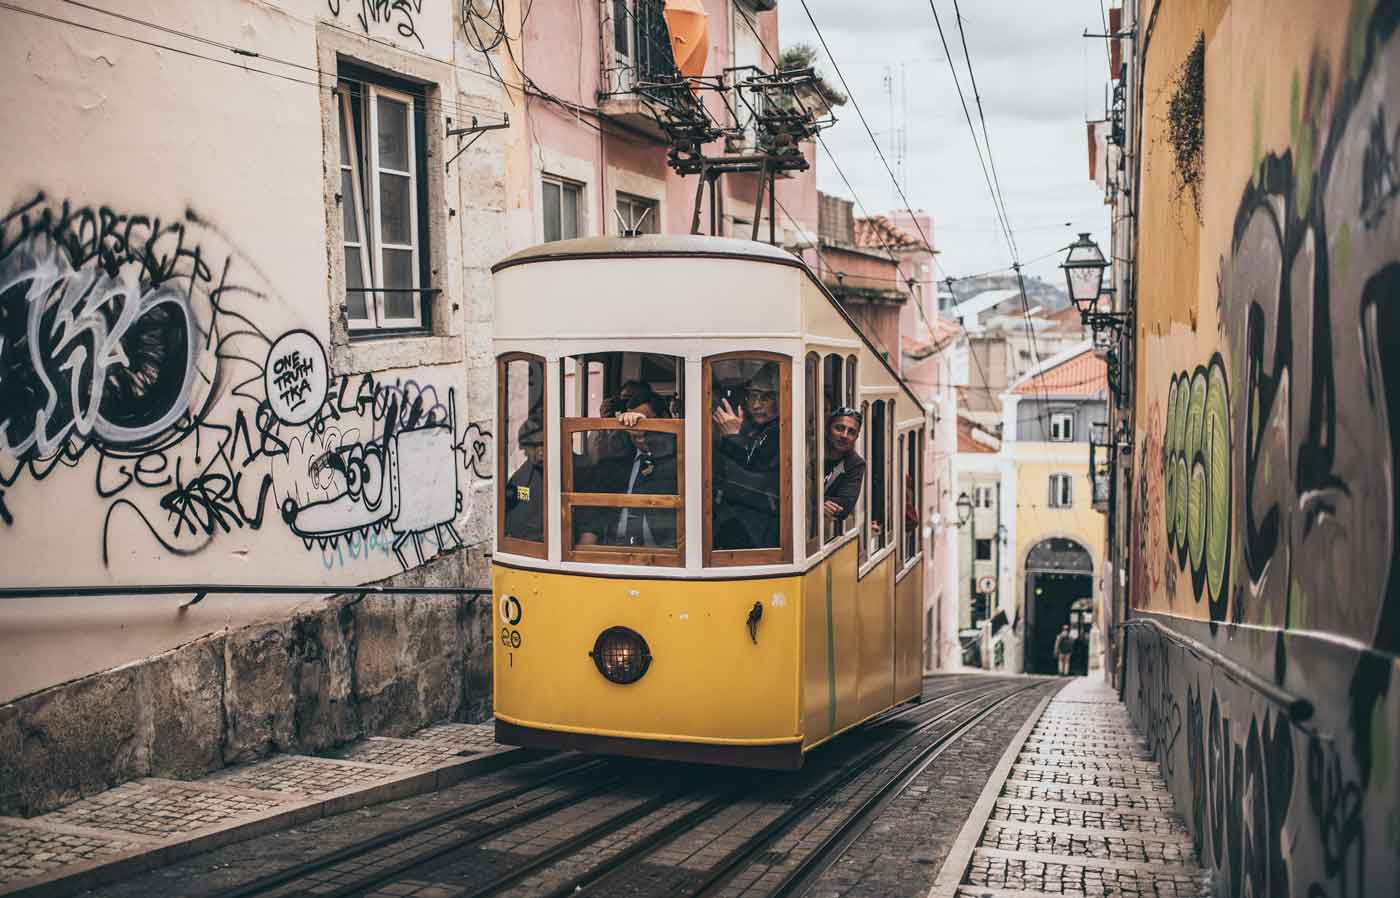 Lisbona, città da scoprire ed ammirare